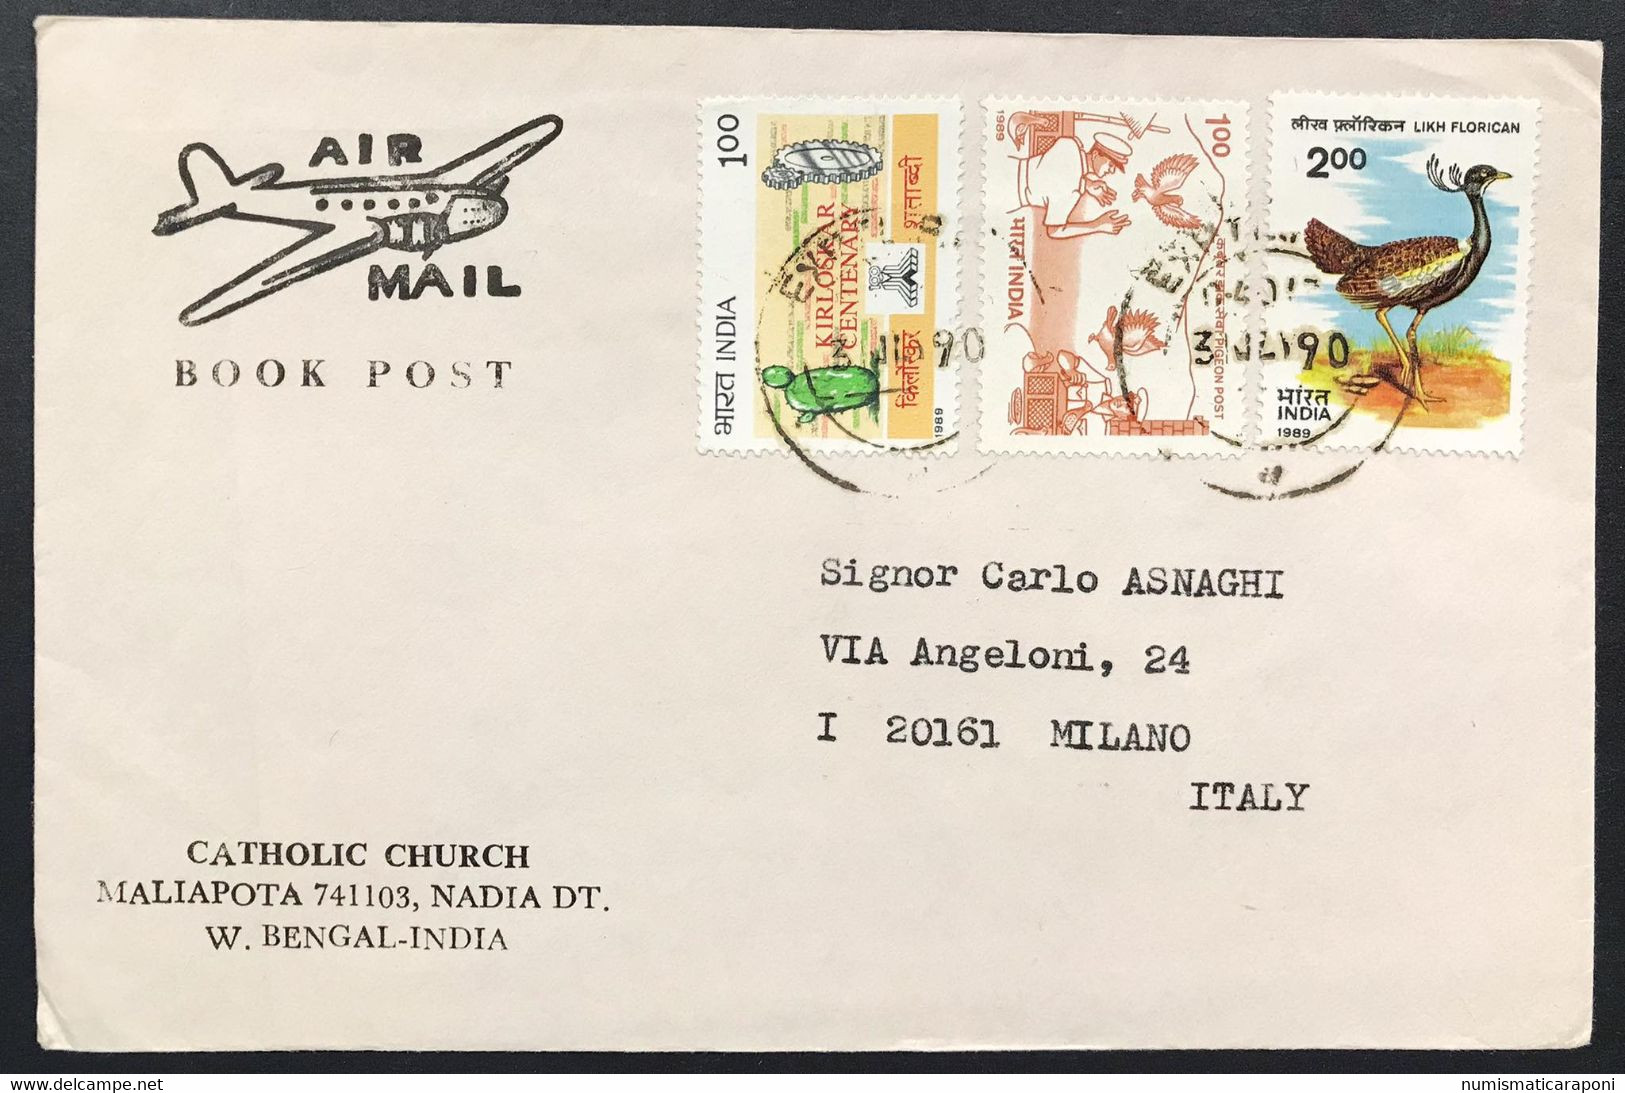 india lotto 21 esemplari posta aerea air mail con commemorativi anni 80-90 su busta cod.bu.011